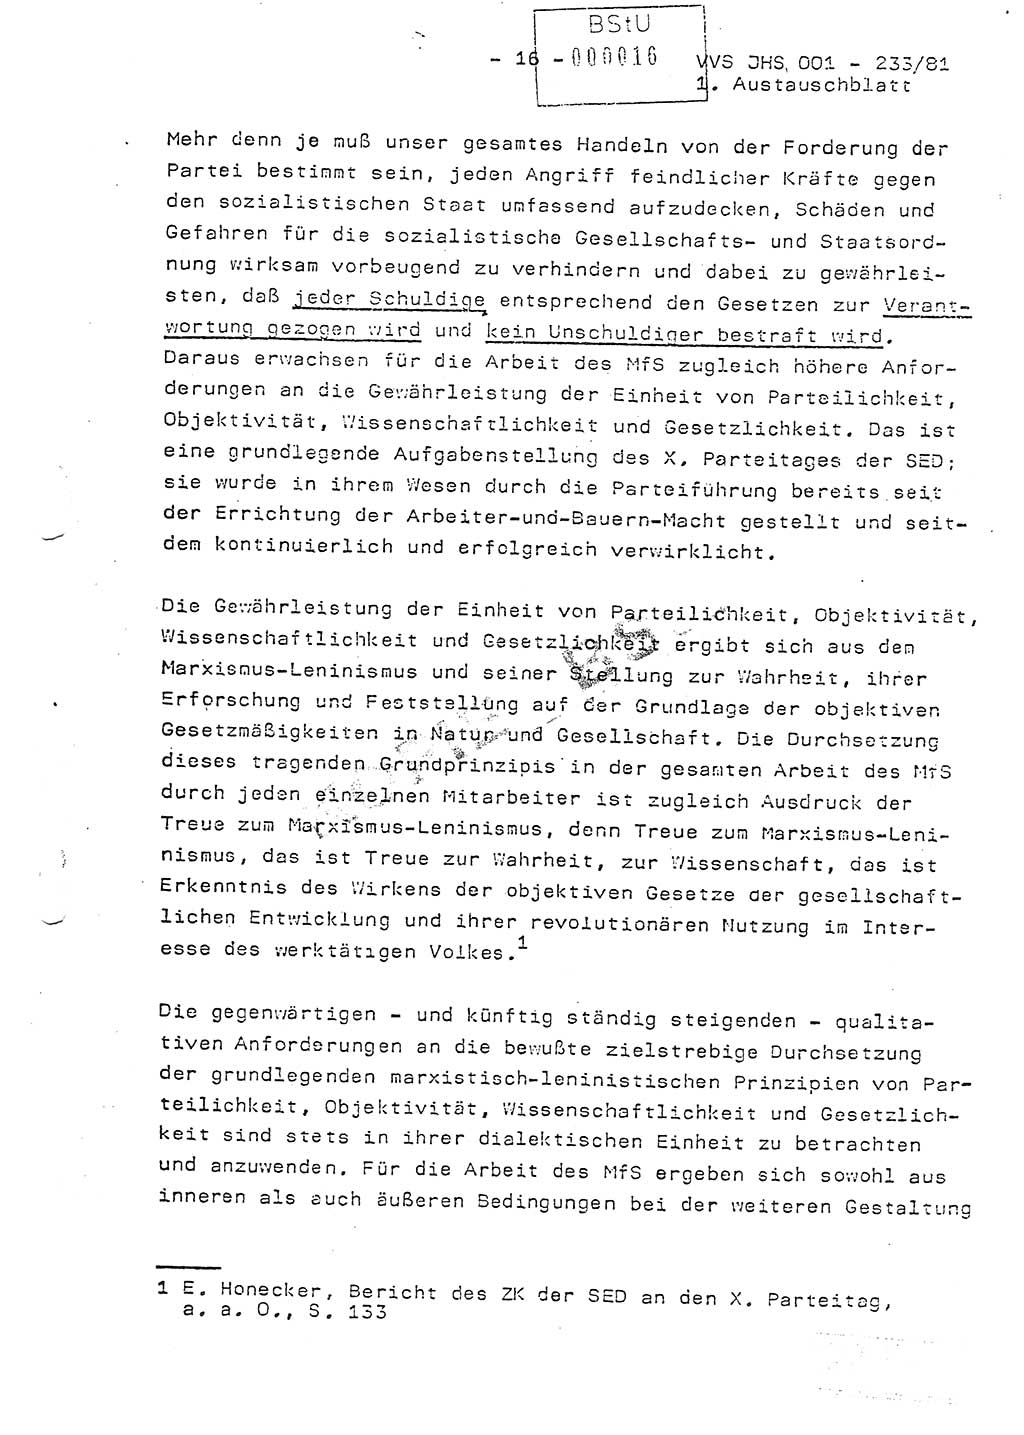 Dissertation Oberstleutnant Horst Zank (JHS), Oberstleutnant Dr. Karl-Heinz Knoblauch (JHS), Oberstleutnant Gustav-Adolf Kowalewski (HA Ⅸ), Oberstleutnant Wolfgang Plötner (HA Ⅸ), Ministerium für Staatssicherheit (MfS) [Deutsche Demokratische Republik (DDR)], Juristische Hochschule (JHS), Vertrauliche Verschlußsache (VVS) o001-233/81, Potsdam 1981, Blatt 16 (Diss. MfS DDR JHS VVS o001-233/81 1981, Bl. 16)